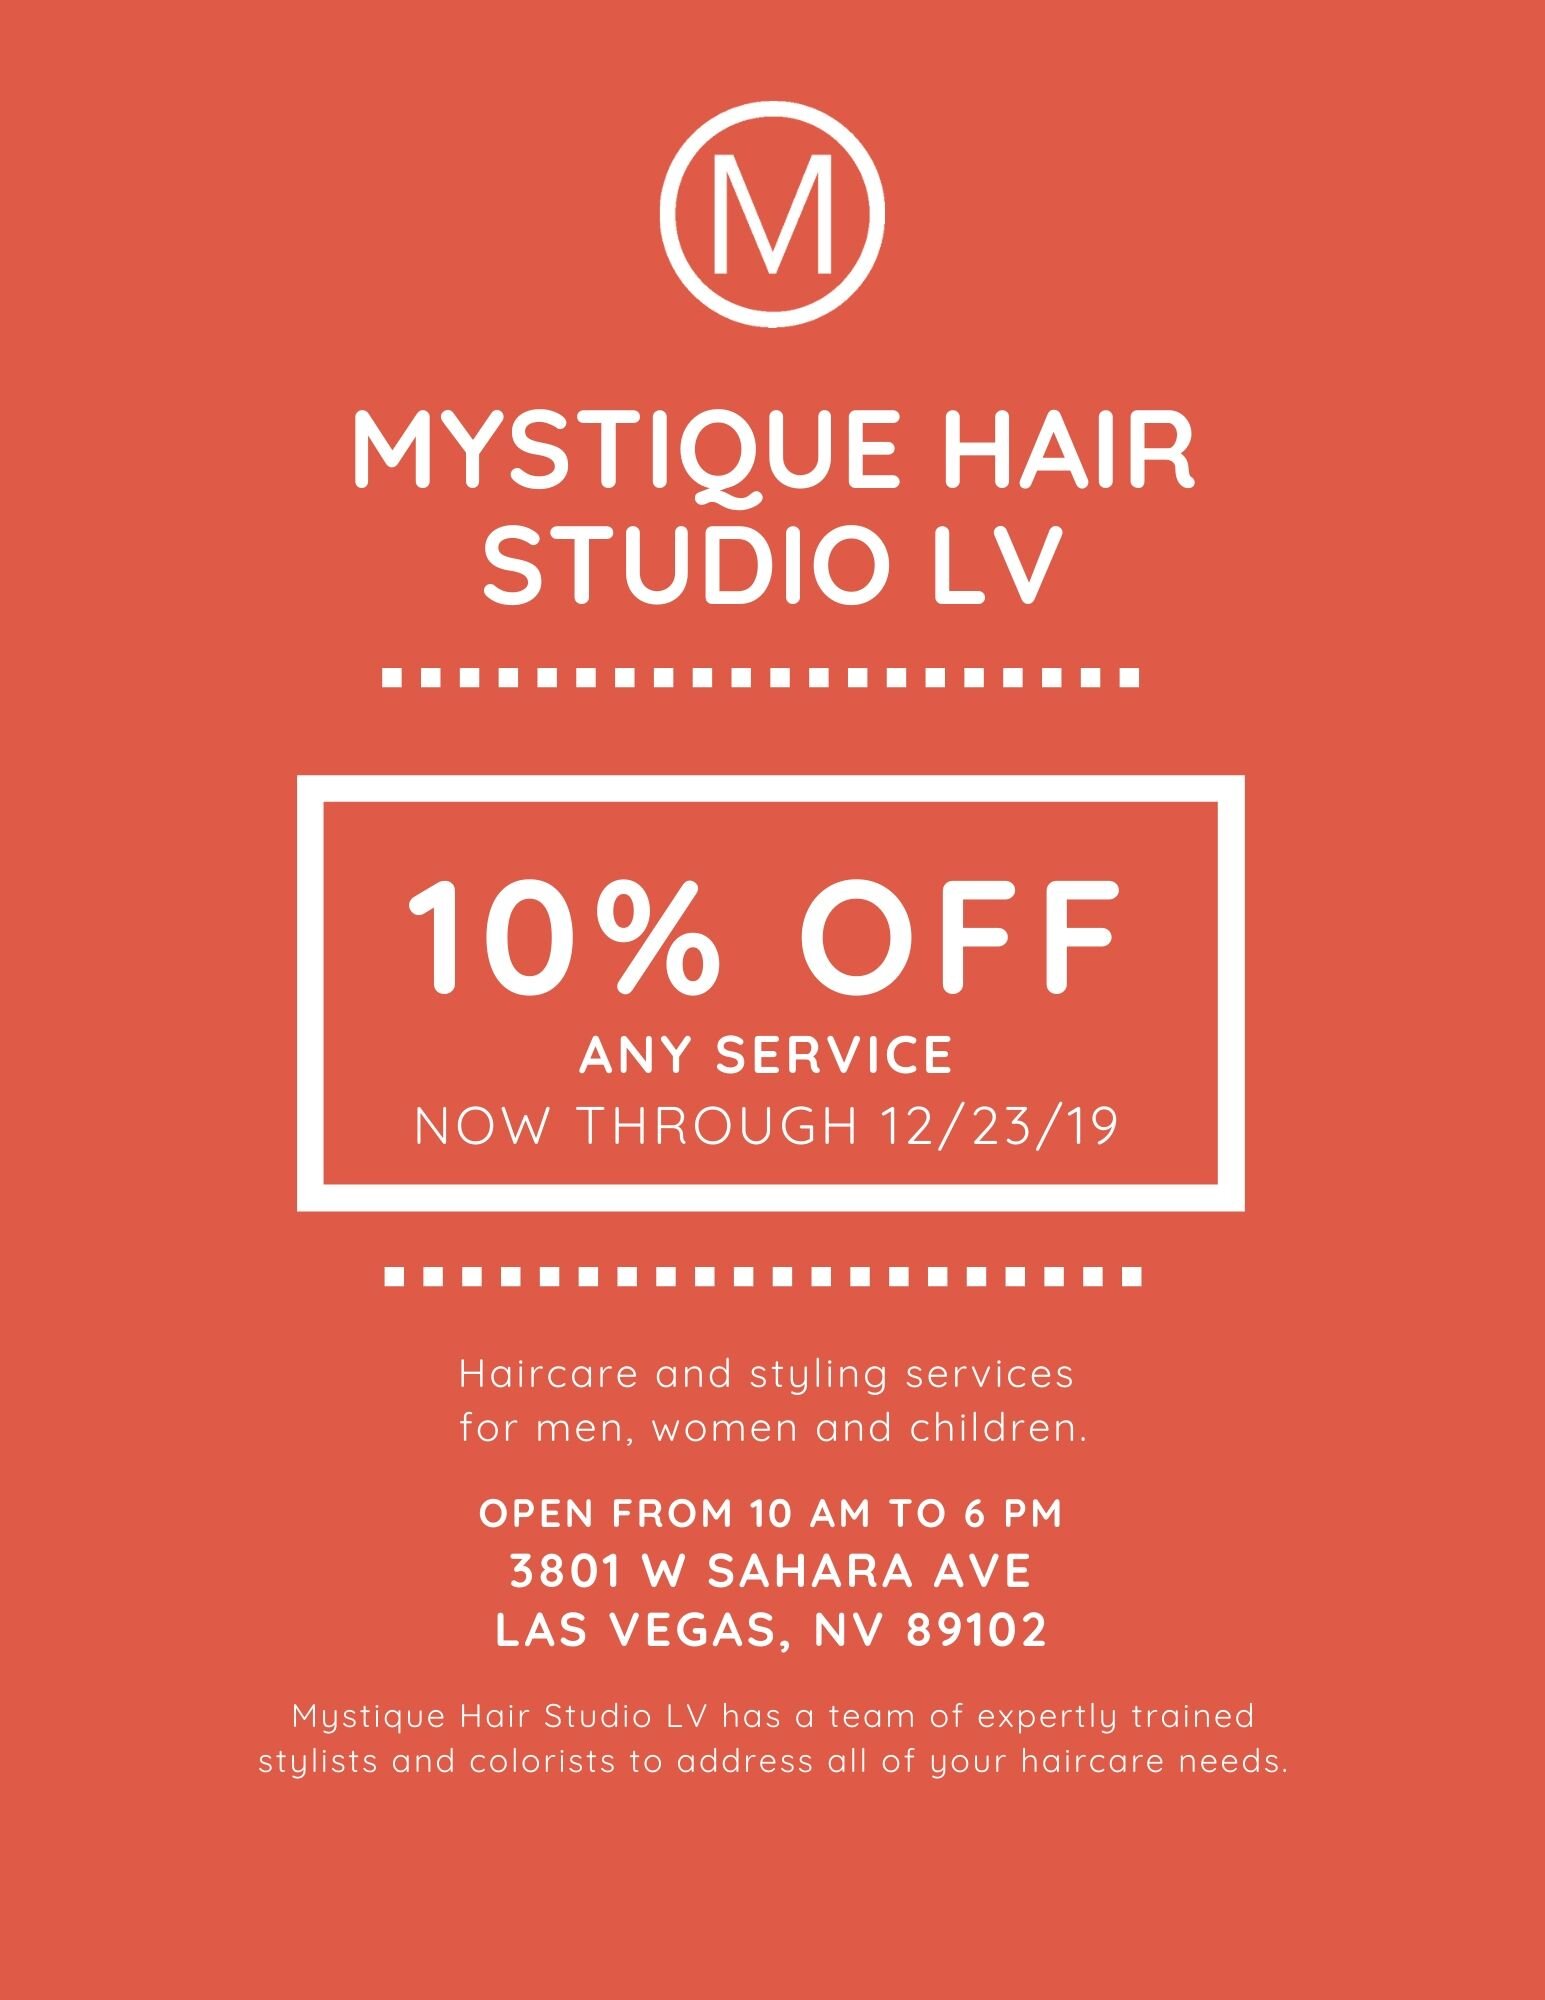 Mystique Hair Studio LV-2.jpg